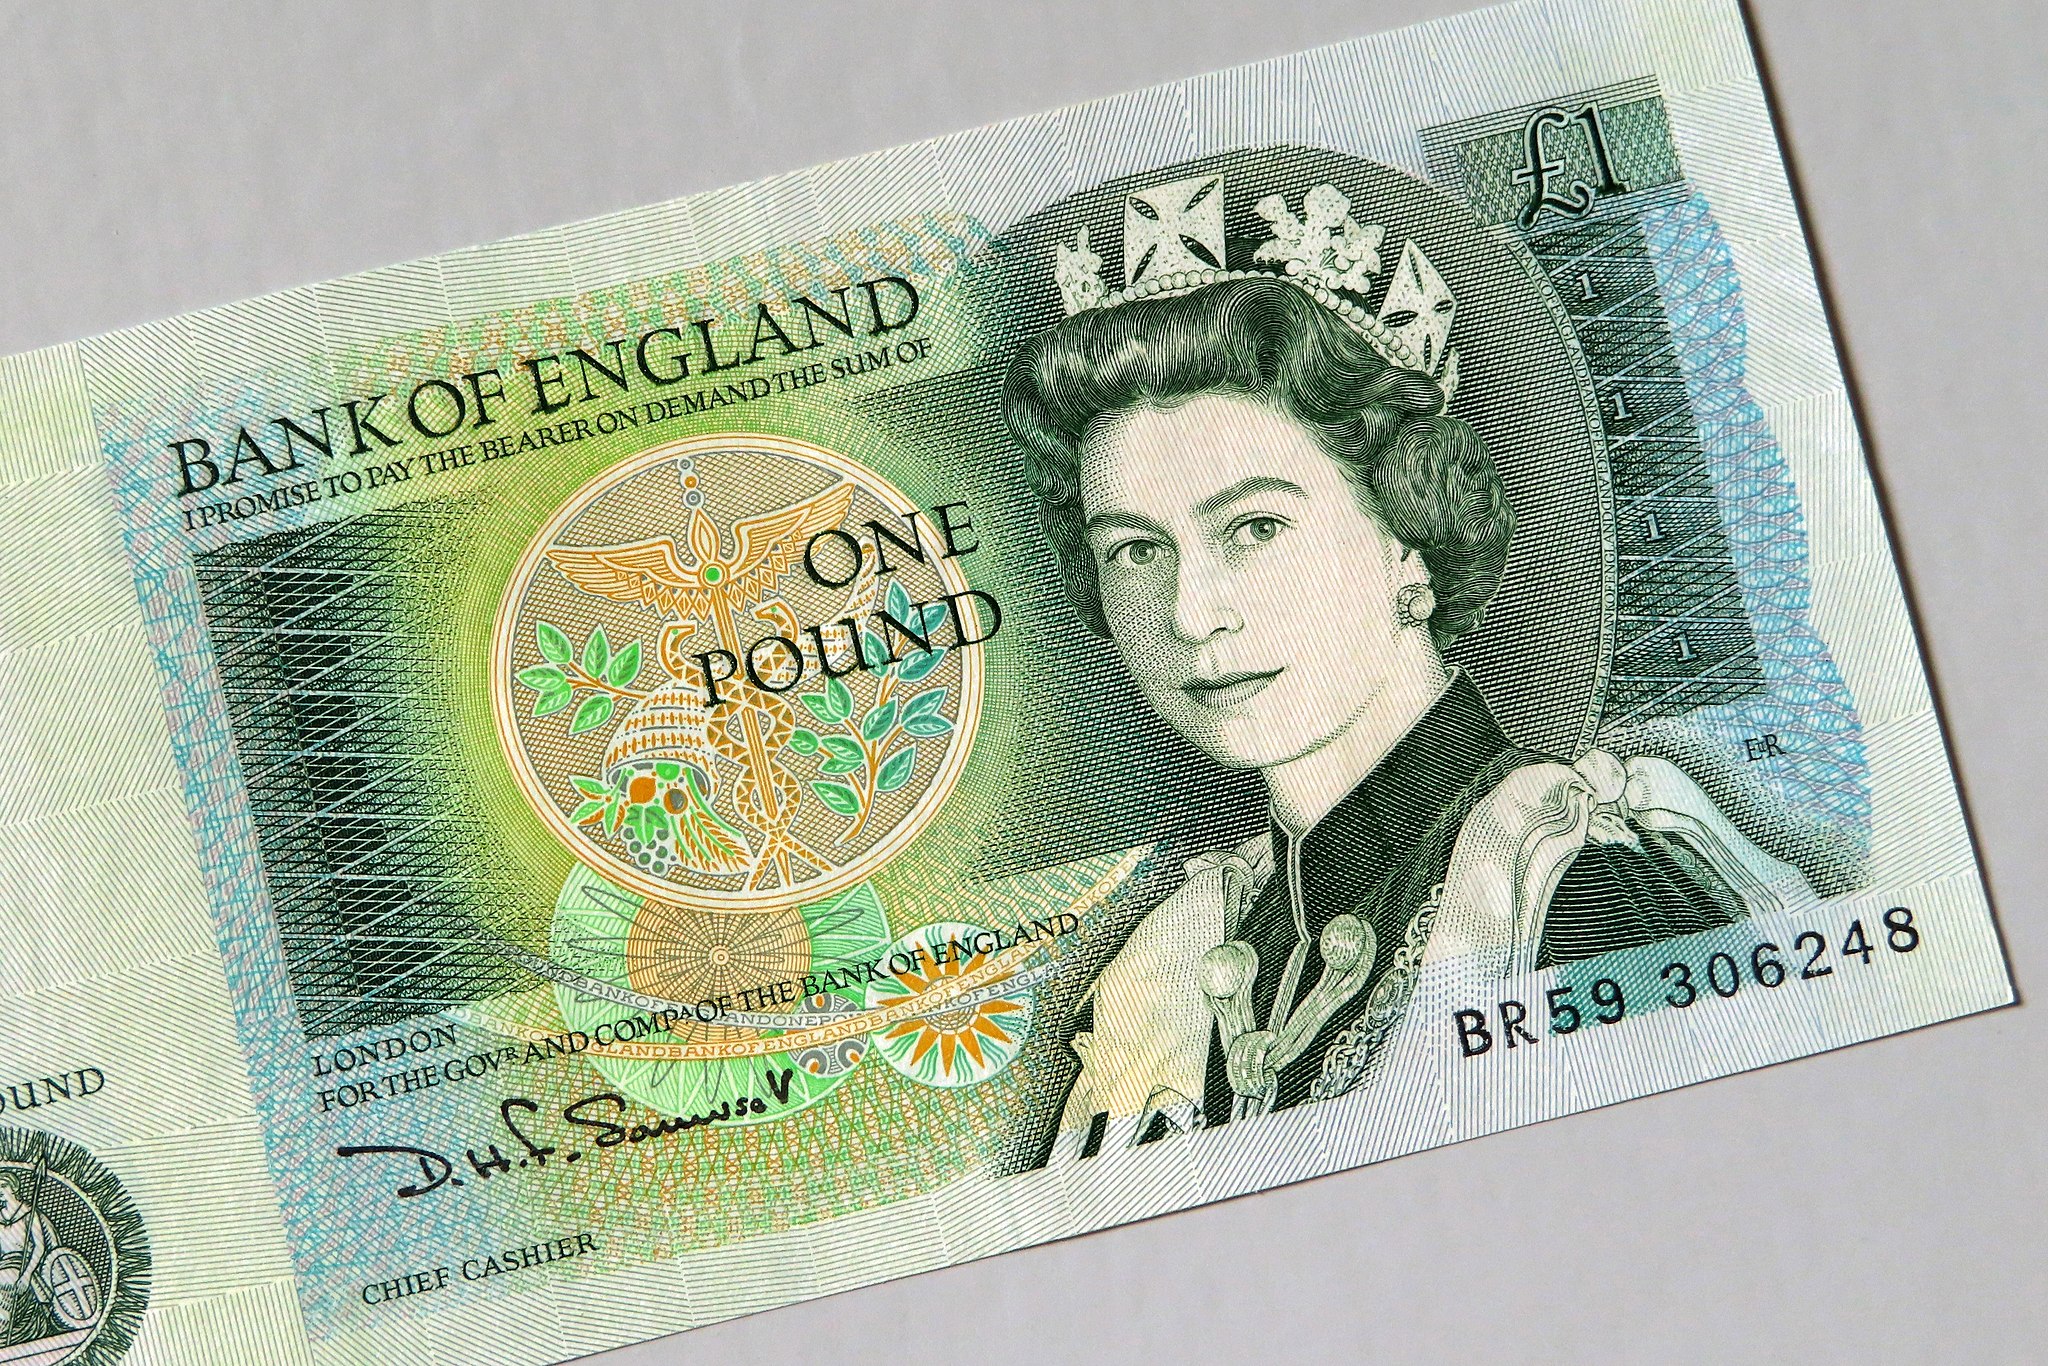 Bild: Chi Ho Chan from Hong Kong, England banknote, Queen Elizabeth II (52133399579), CC BY 2.0, via Wikimedia Commons (Keine Änderungen vorgenommen)